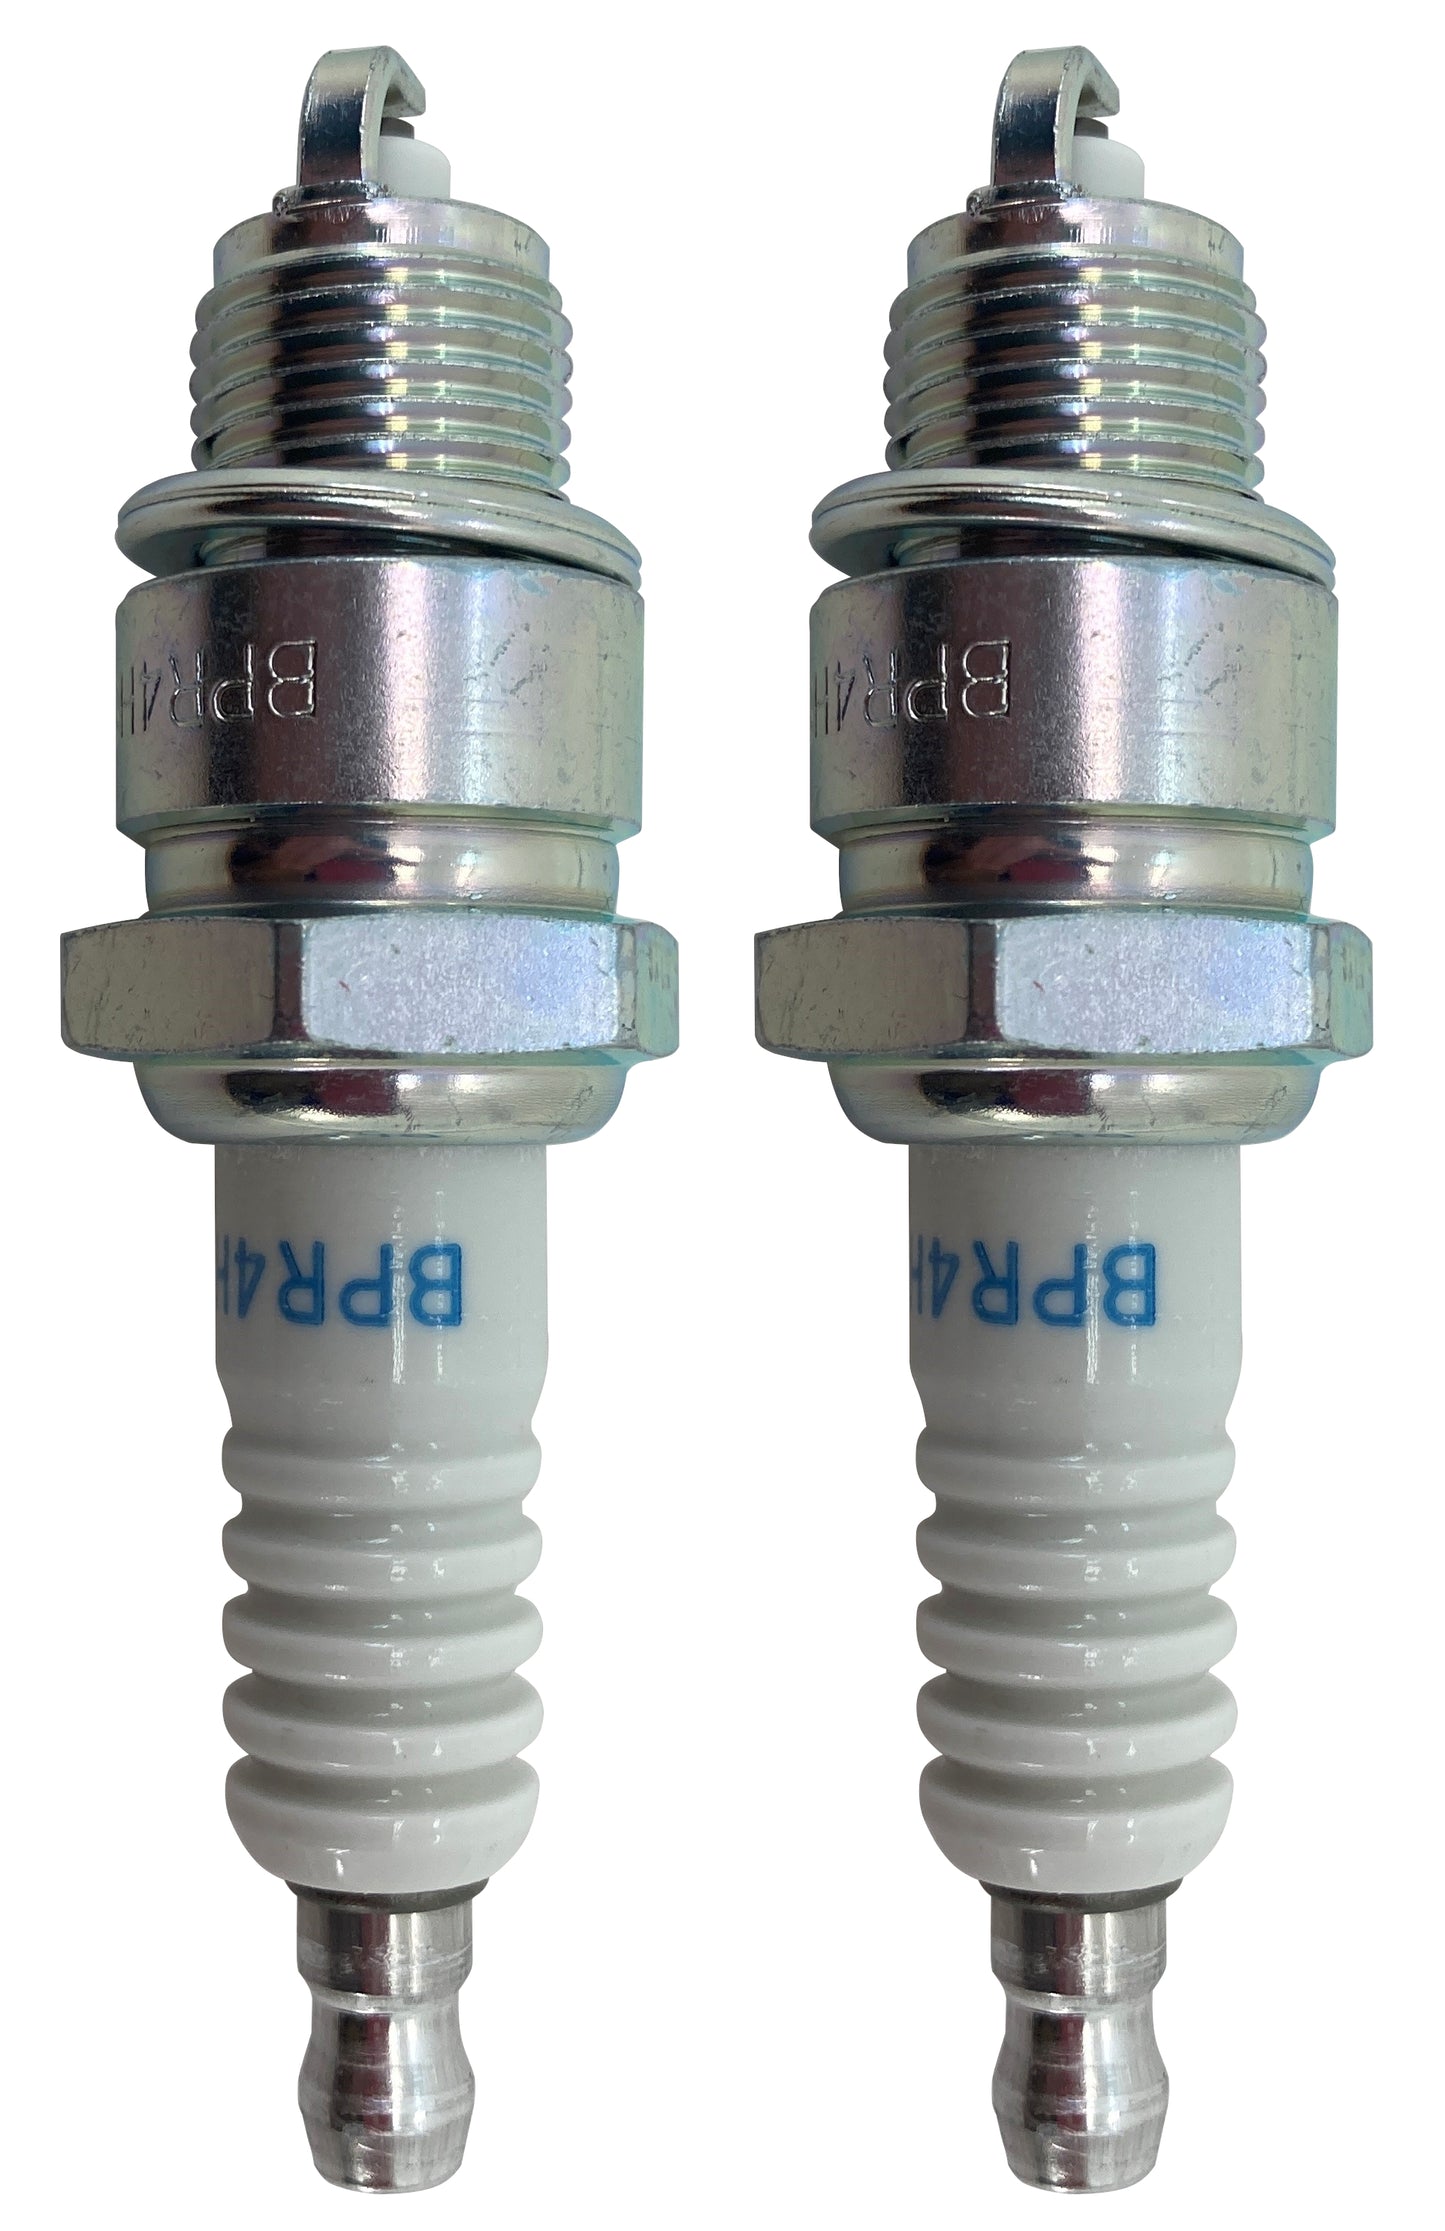 Honda Original Equipment Spark Plug (Pack of 2) - 98076-54747